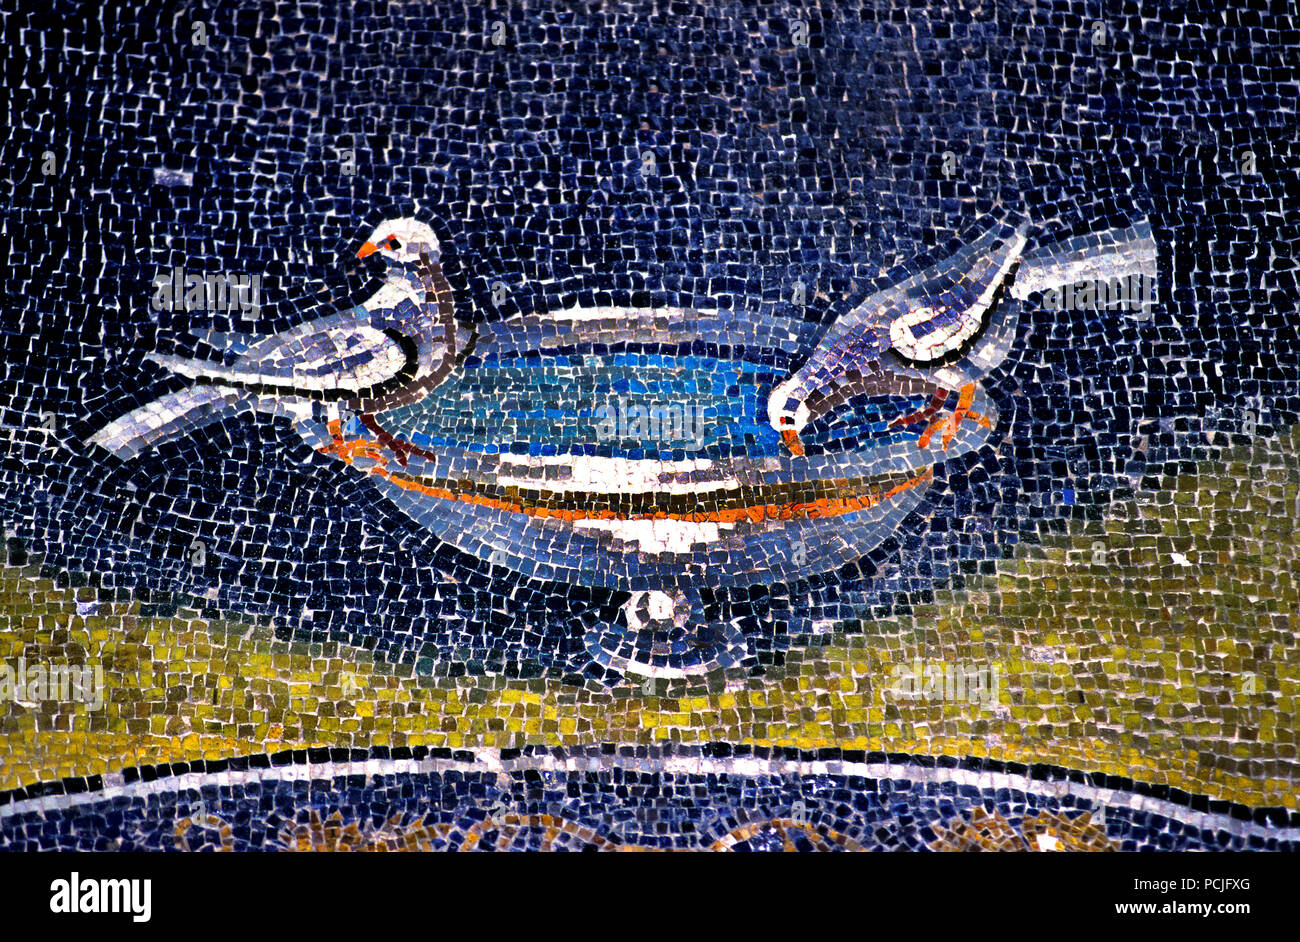 Dans l'Esprit Saint Mausolée de Galla Placidia à Ravenne (386 - 450 AD) Mosaïques ( la fin de la période romaine et byzantine, l'architecture) Émilie-romagne - Italie du Nord. ( Site du patrimoine mondial de l') pigeon, Banque D'Images